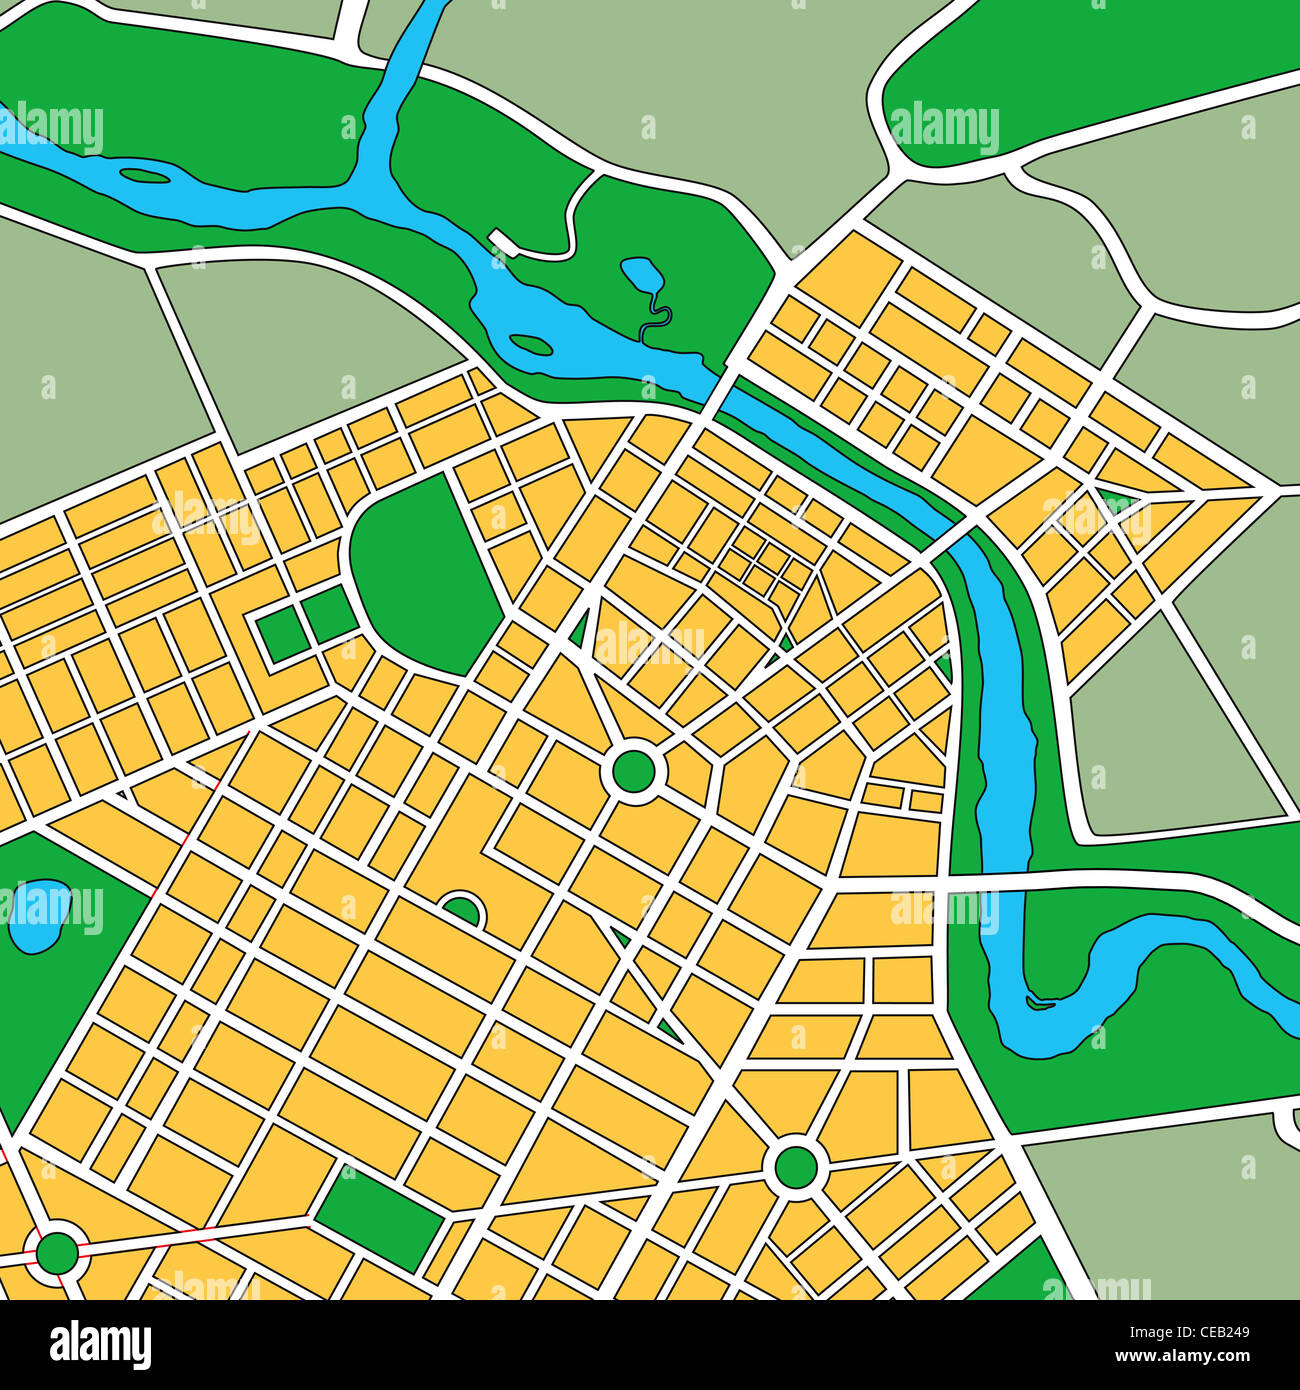 Mapa o plano de la ciudad genérica mostrando calles y parques Foto de stock